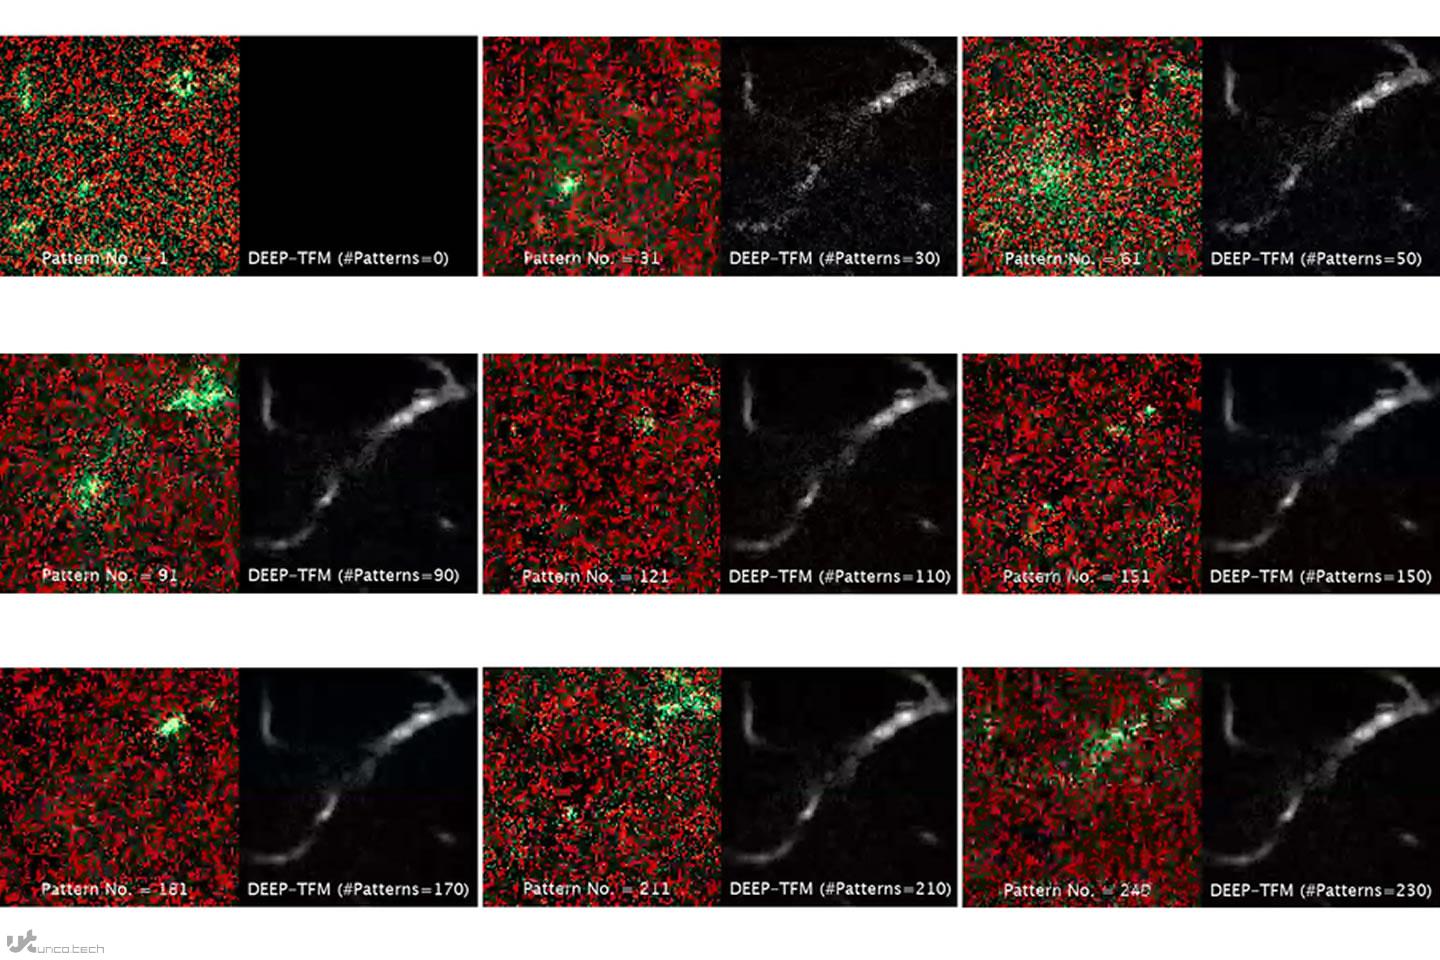 1625756393 temporal vs deep tfm image2 - روش میکروسکوپی MIT تصویربرداری از بافت های عمیق را بهبود می بخشد